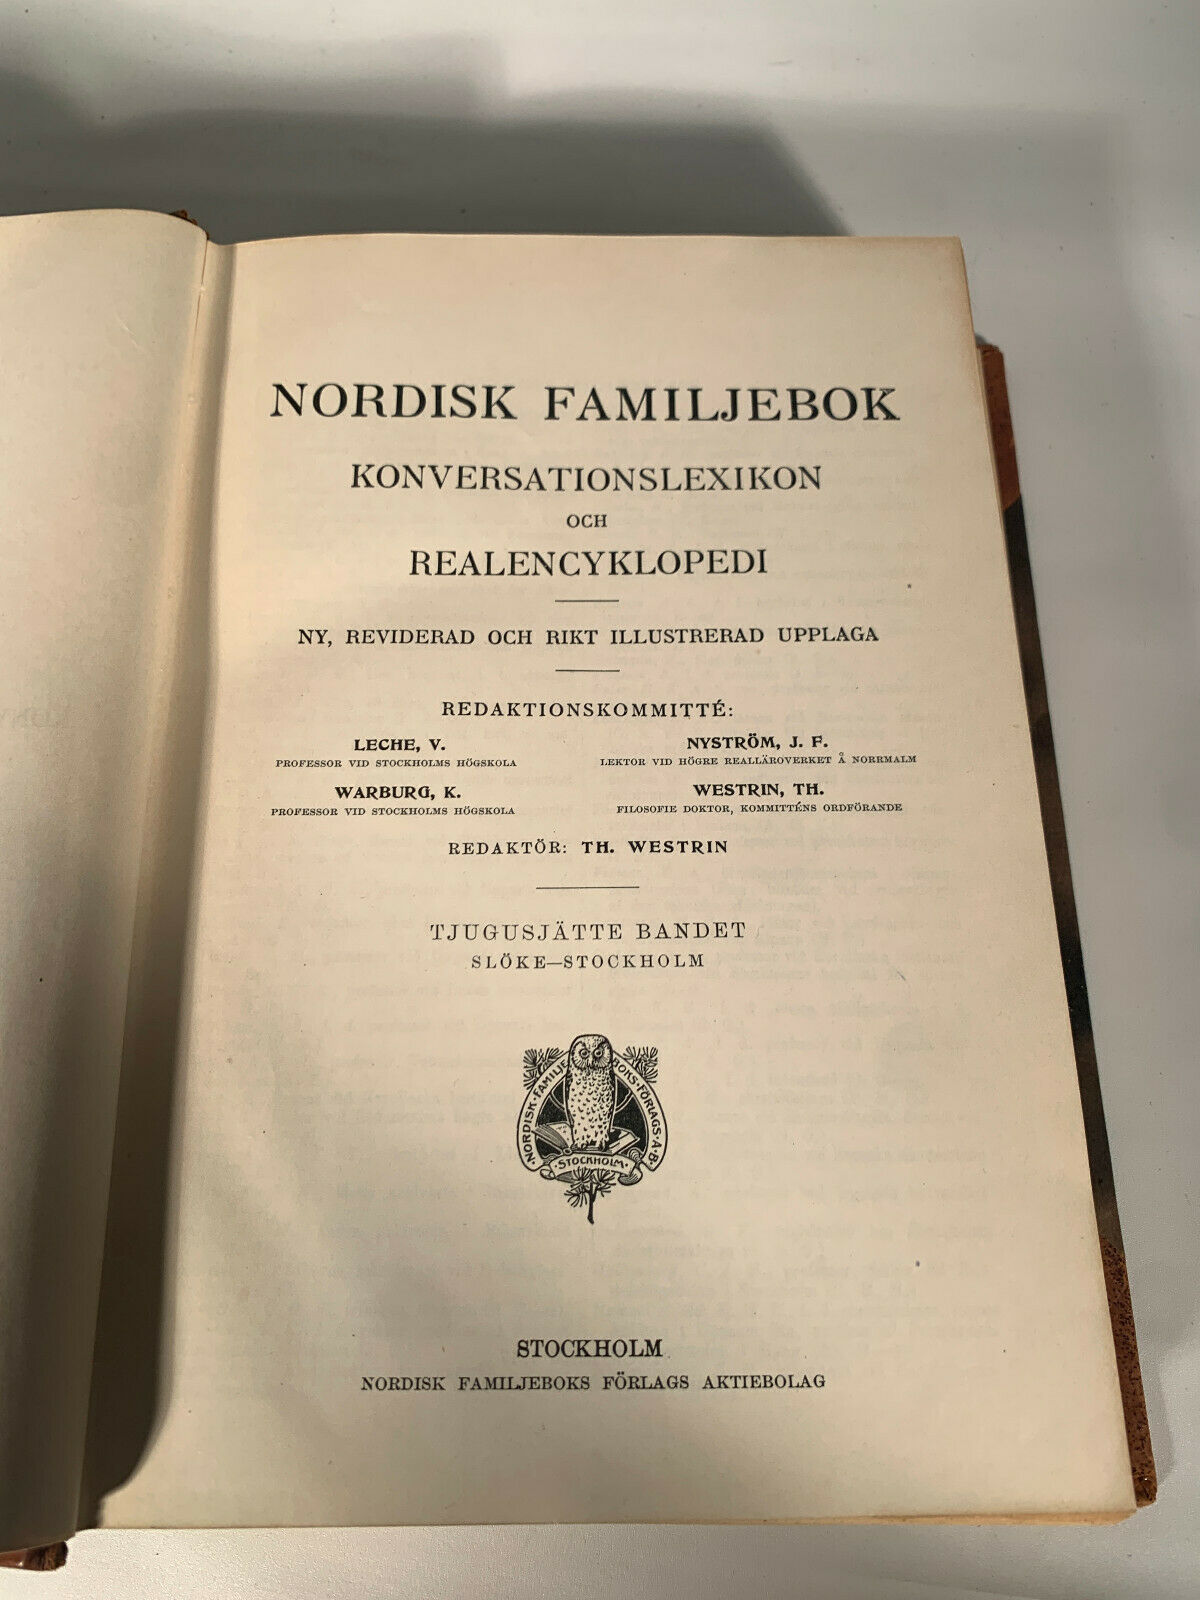 Nordisk Familjebok (Nordic Family Book) Sloke - Stockholm, Vol. 26 - 1917